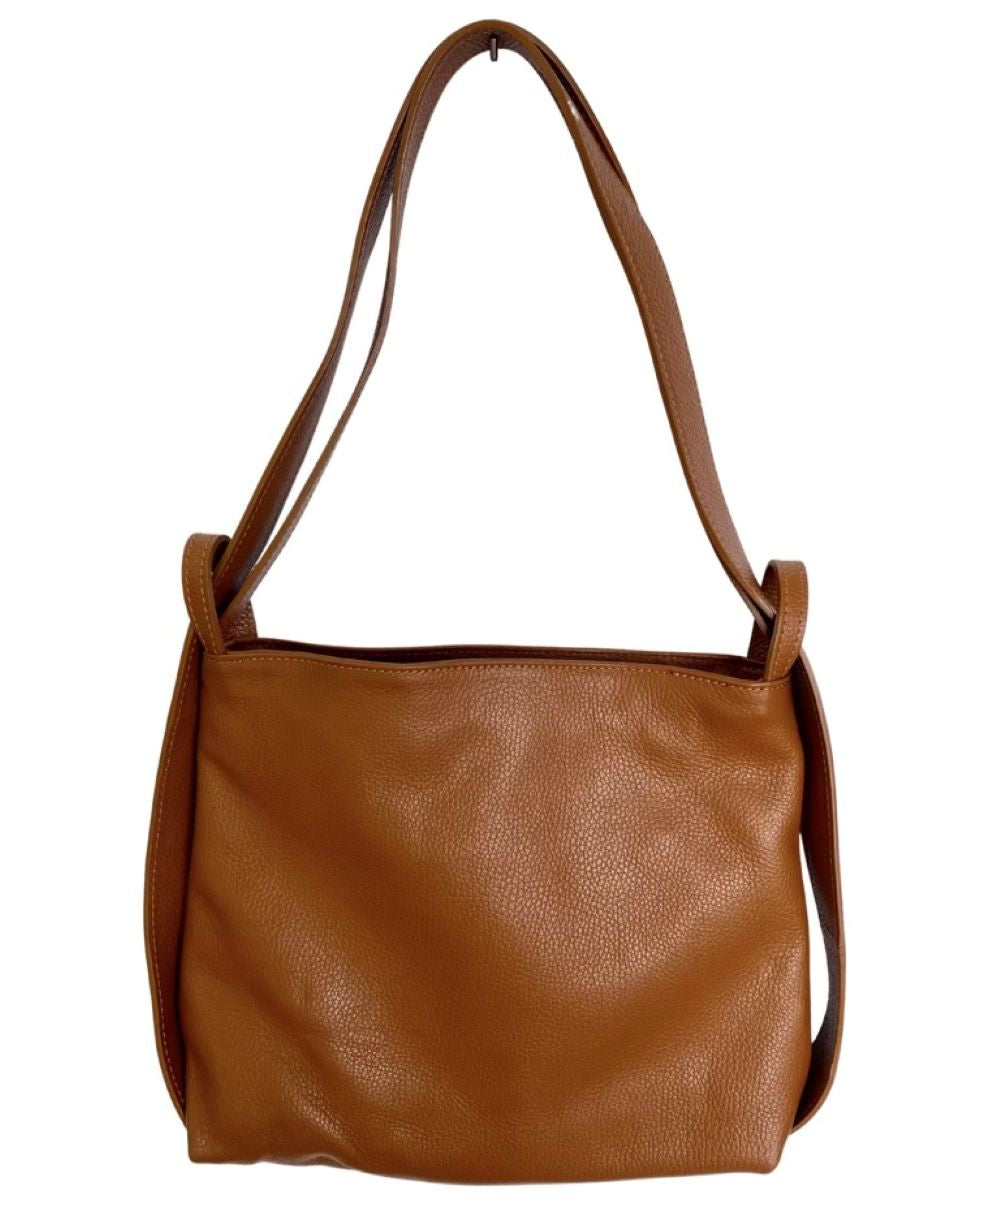 Buy Grey Leather Bag Leather Hobo Bag Soft Leather Bag Laptop Bag LARGE  HELEN Bag Online in India - Etsy